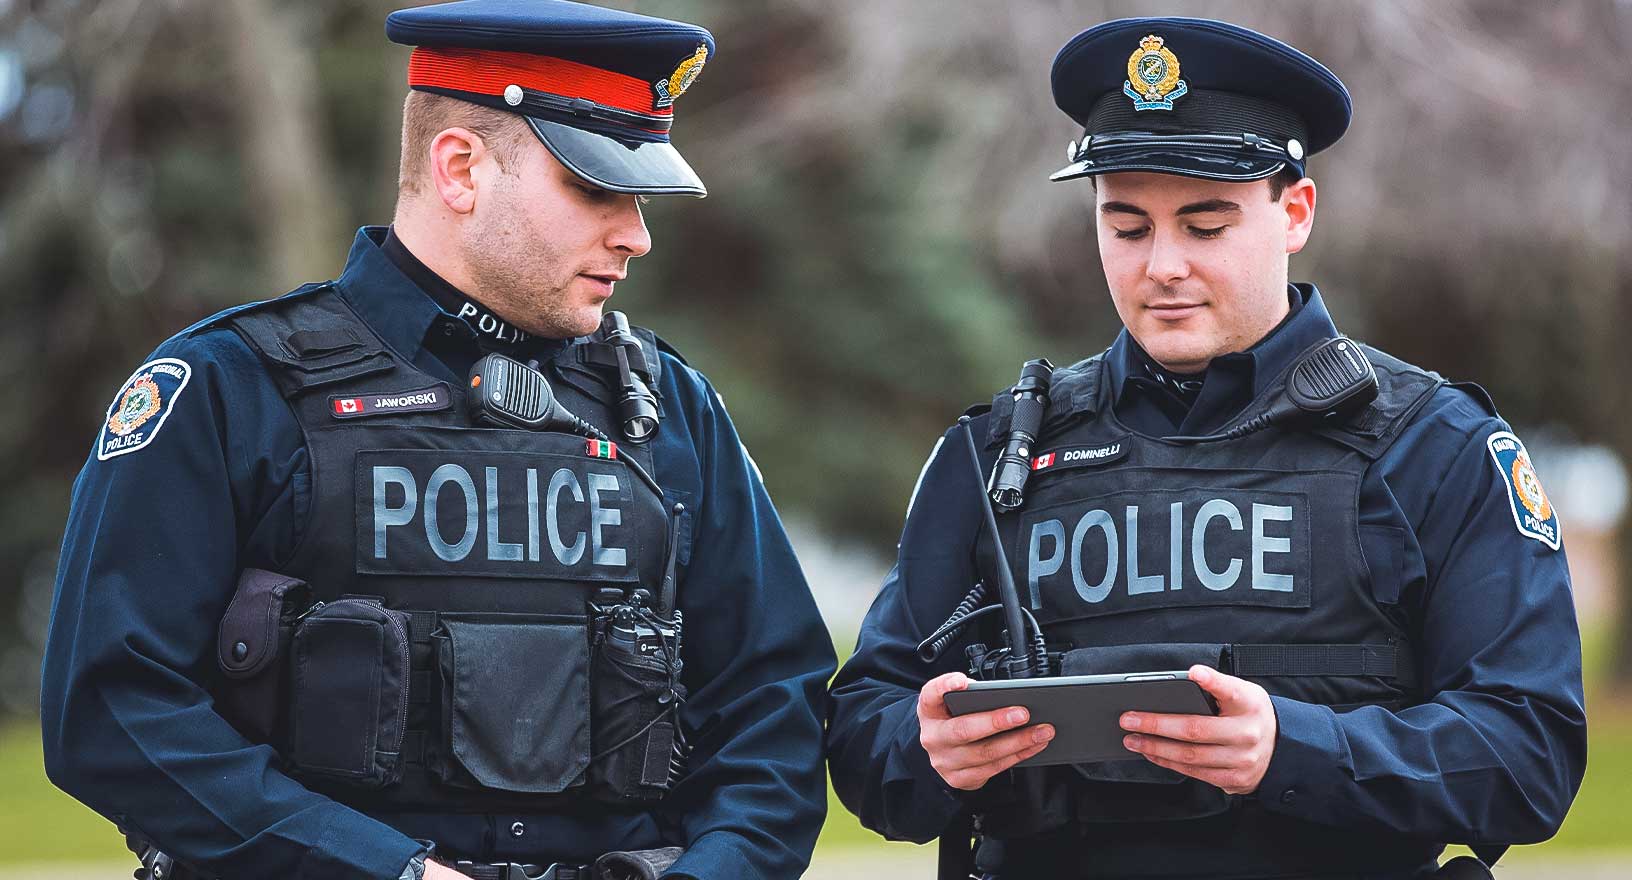 La polizia utilizza un sistema di gestione dei registri delle forze dell'ordine per ricevere e analizzare le informazioni